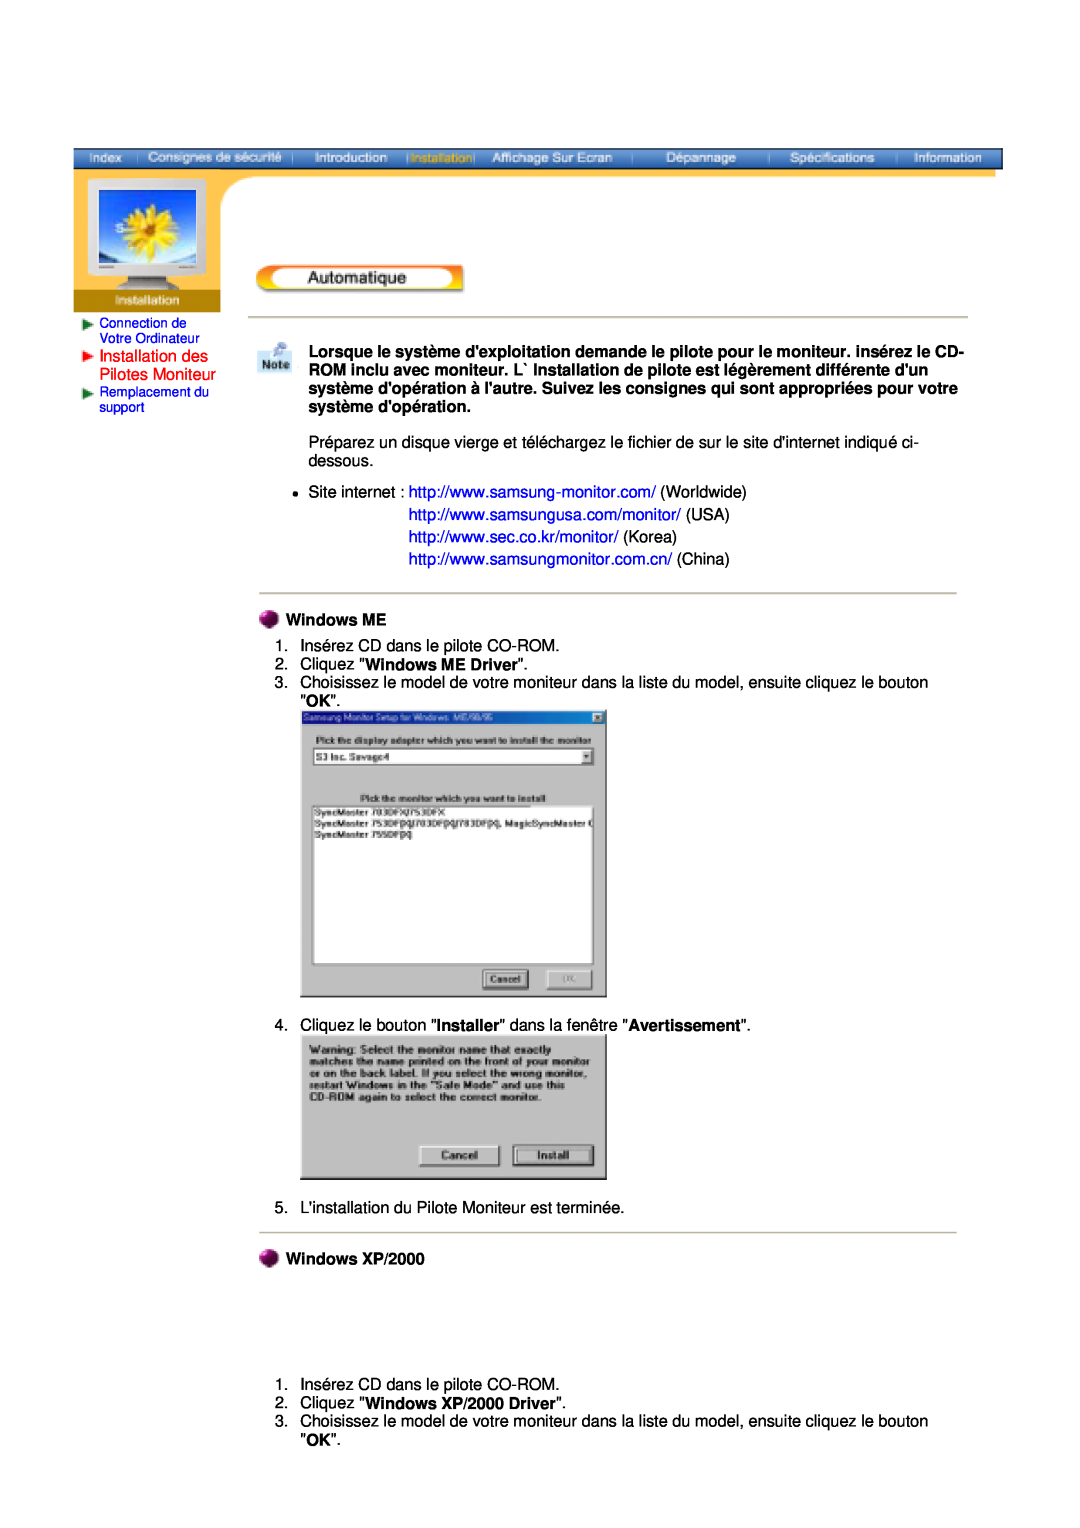 Samsung V, 153S manual Installation des Pilotes Moniteur, Cliquez Windows ME Driver, Windows XP/2000 